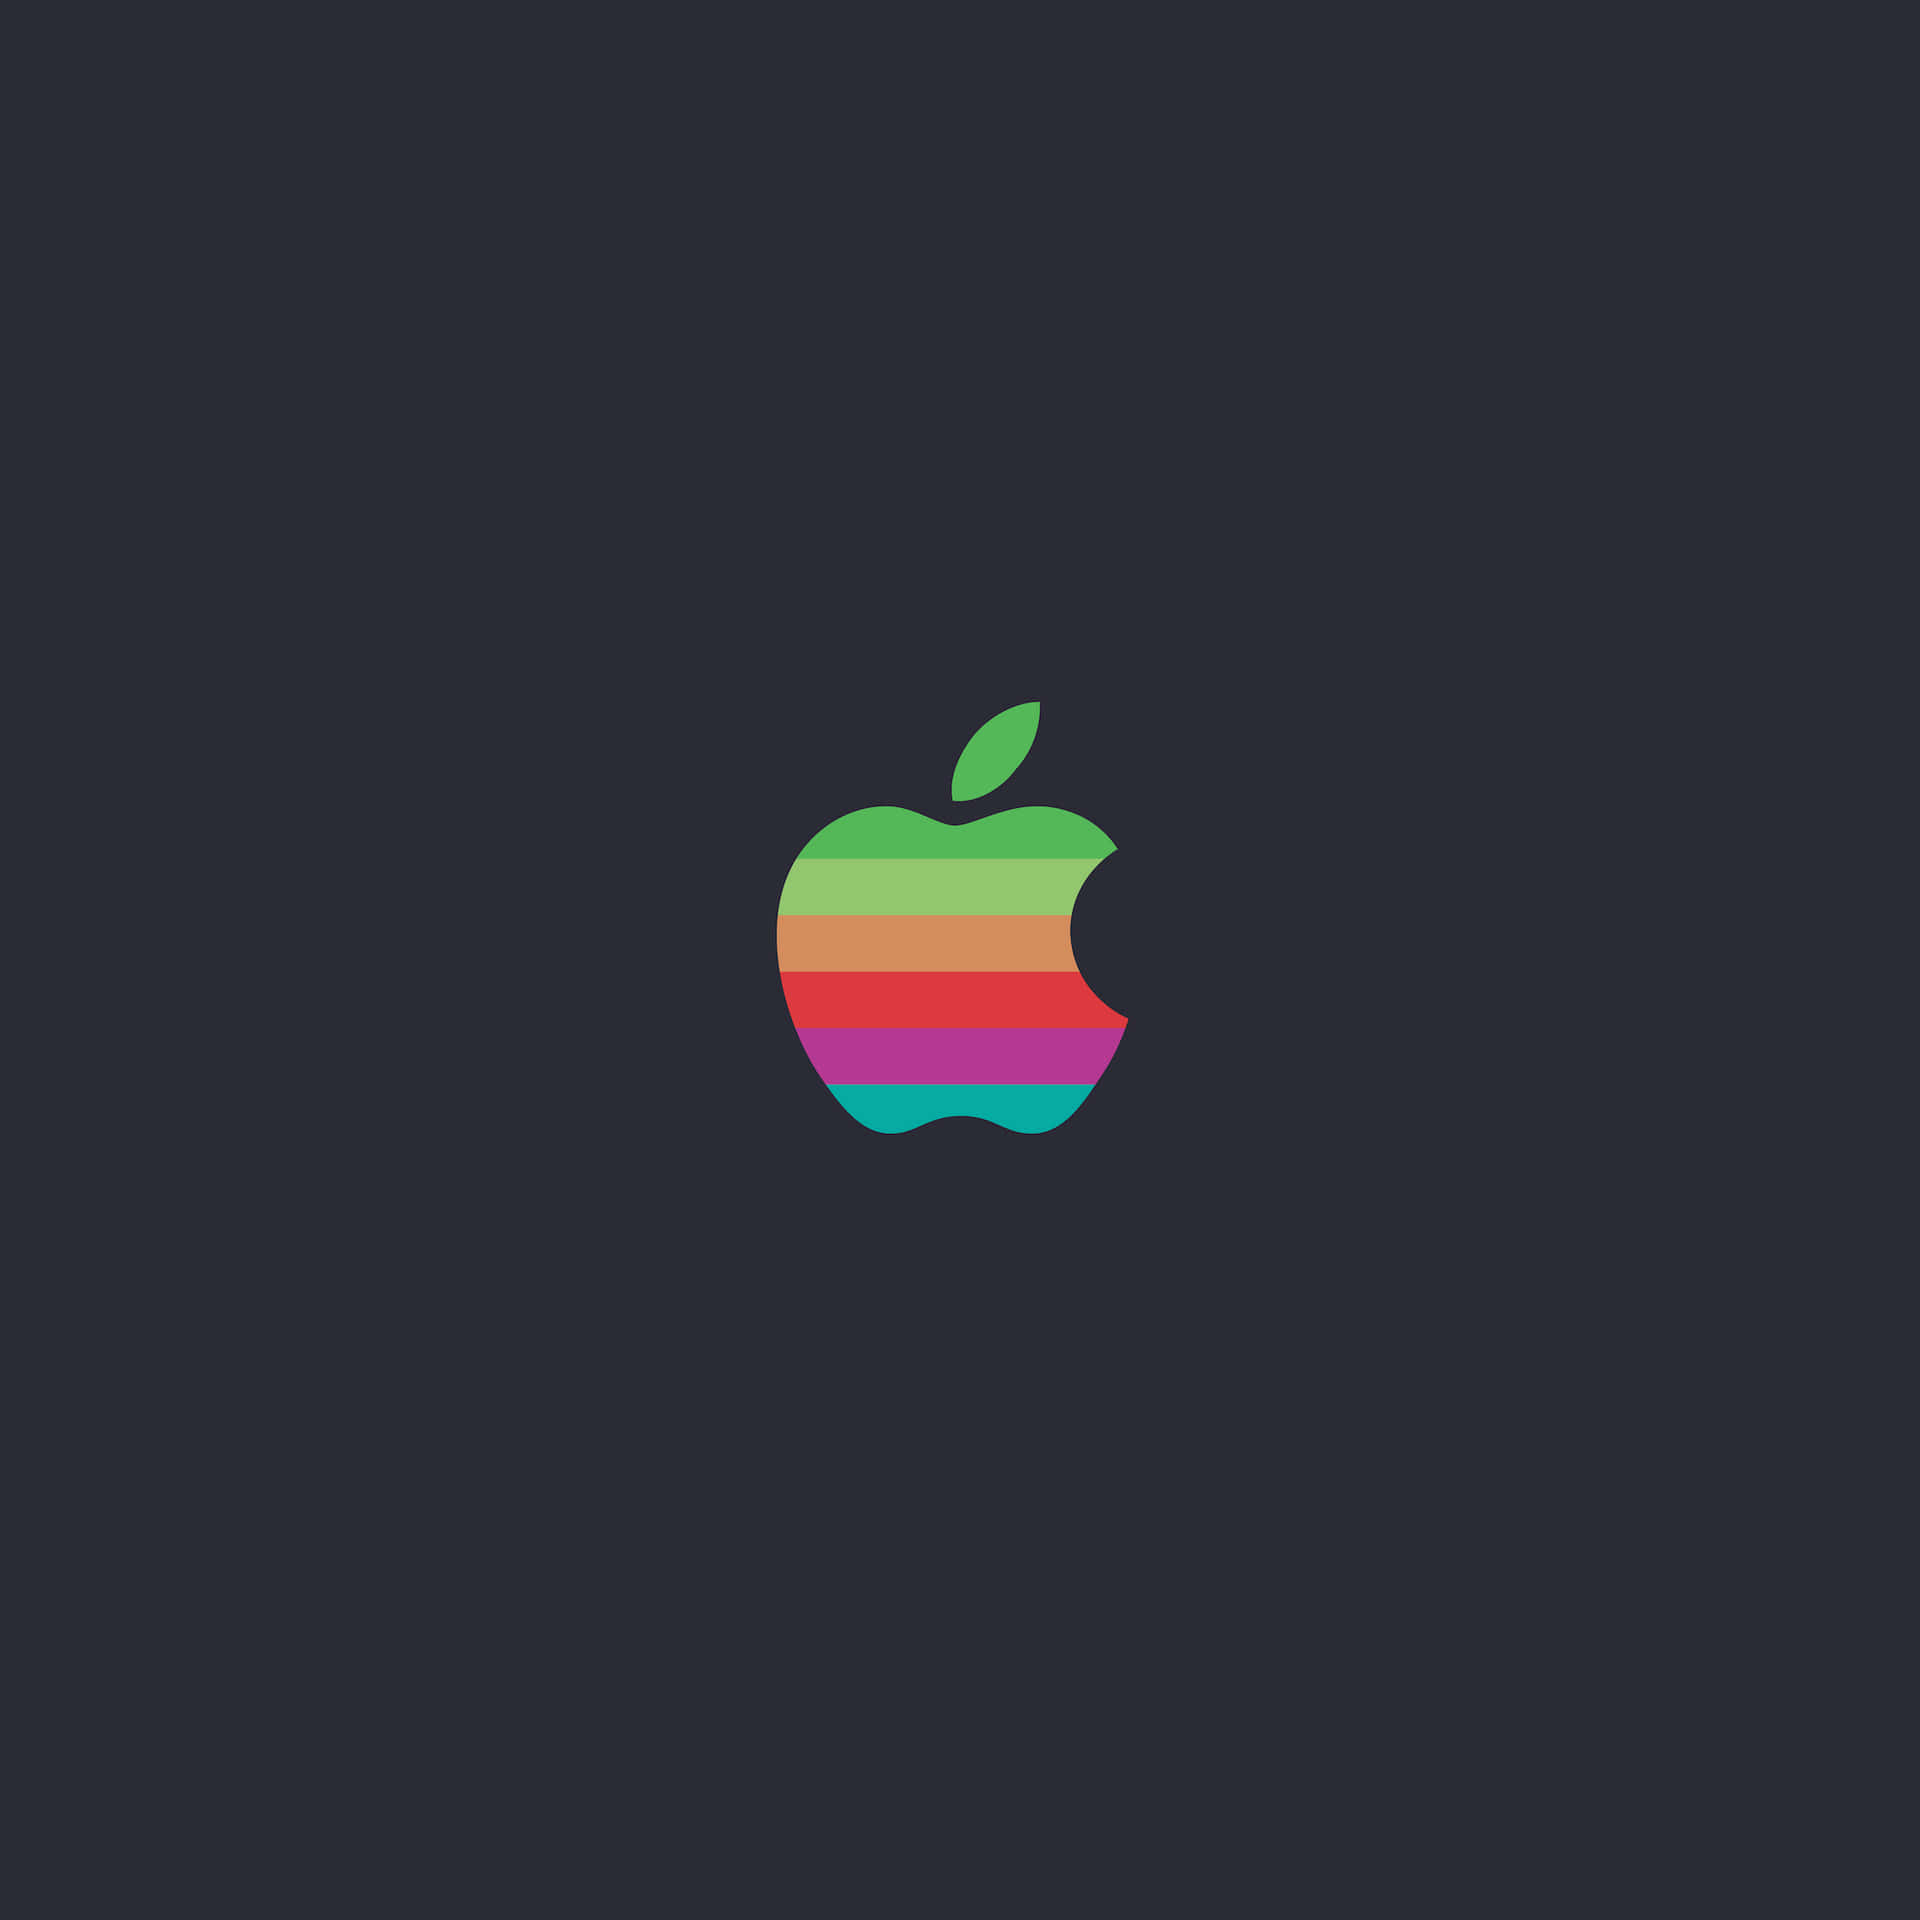 Eineabstrakte Darstellung Des Originalen Apple Inc-logos. Wallpaper